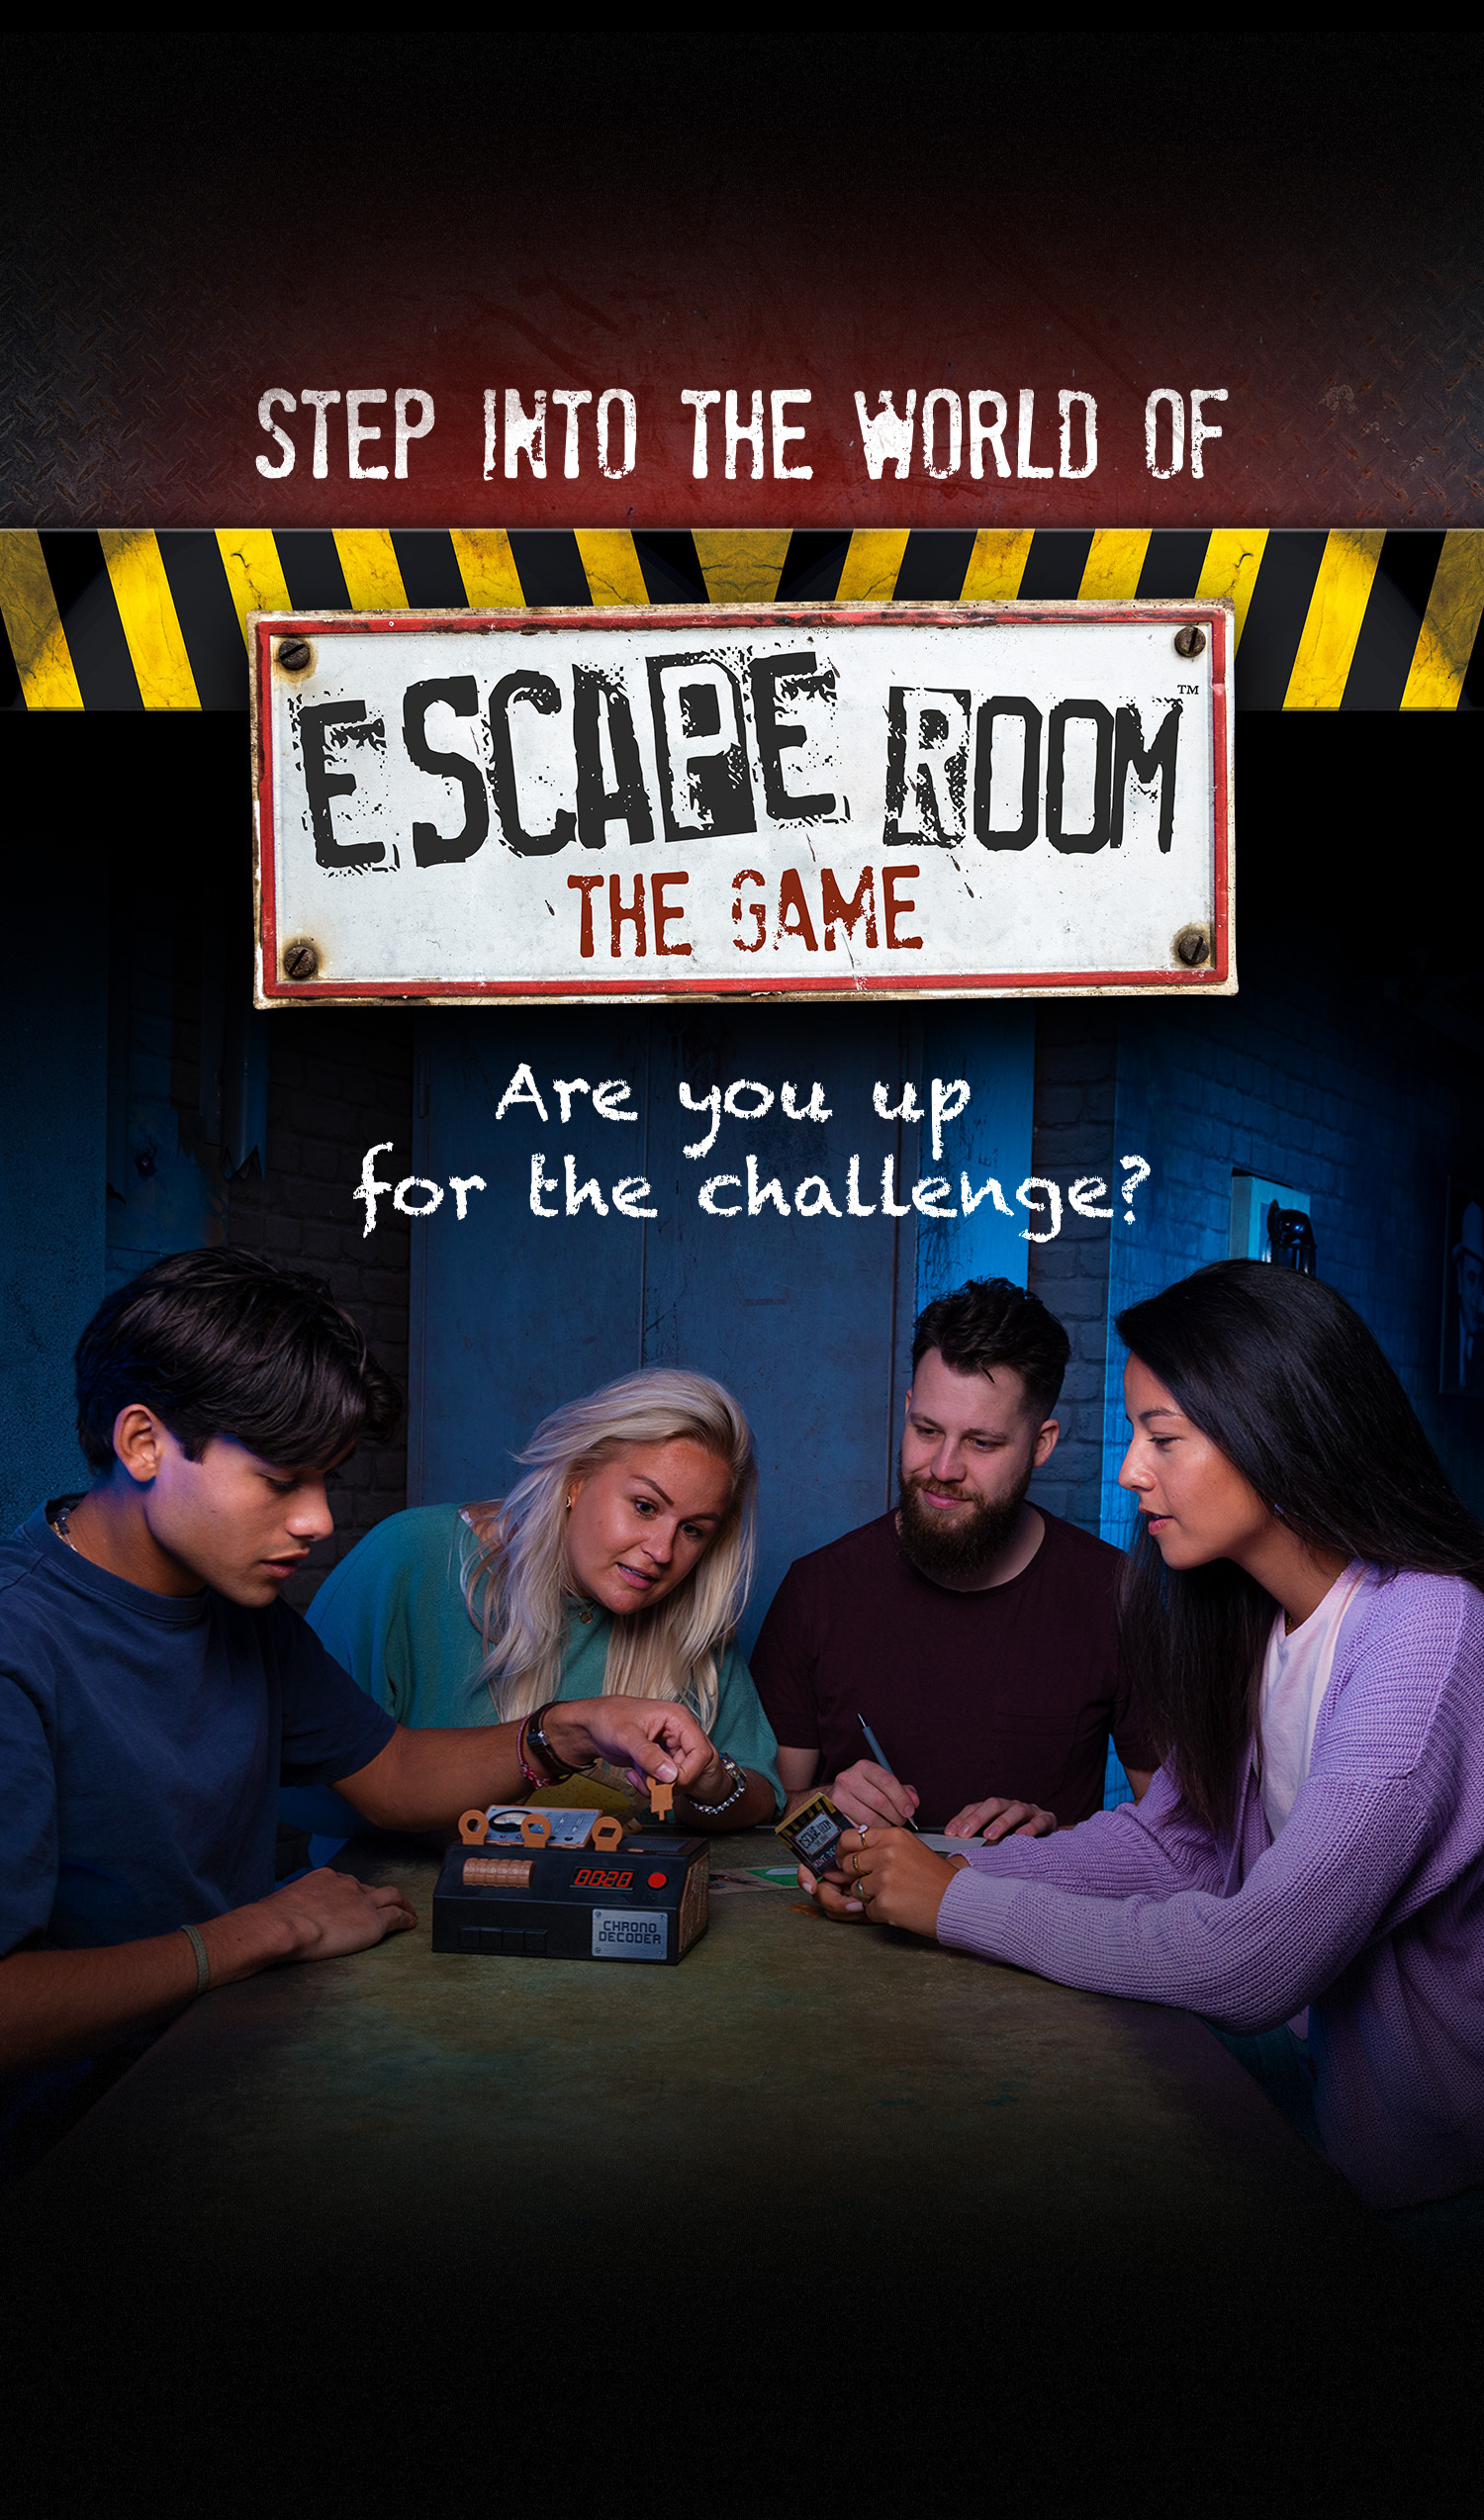 As aventuras em um Escape Game